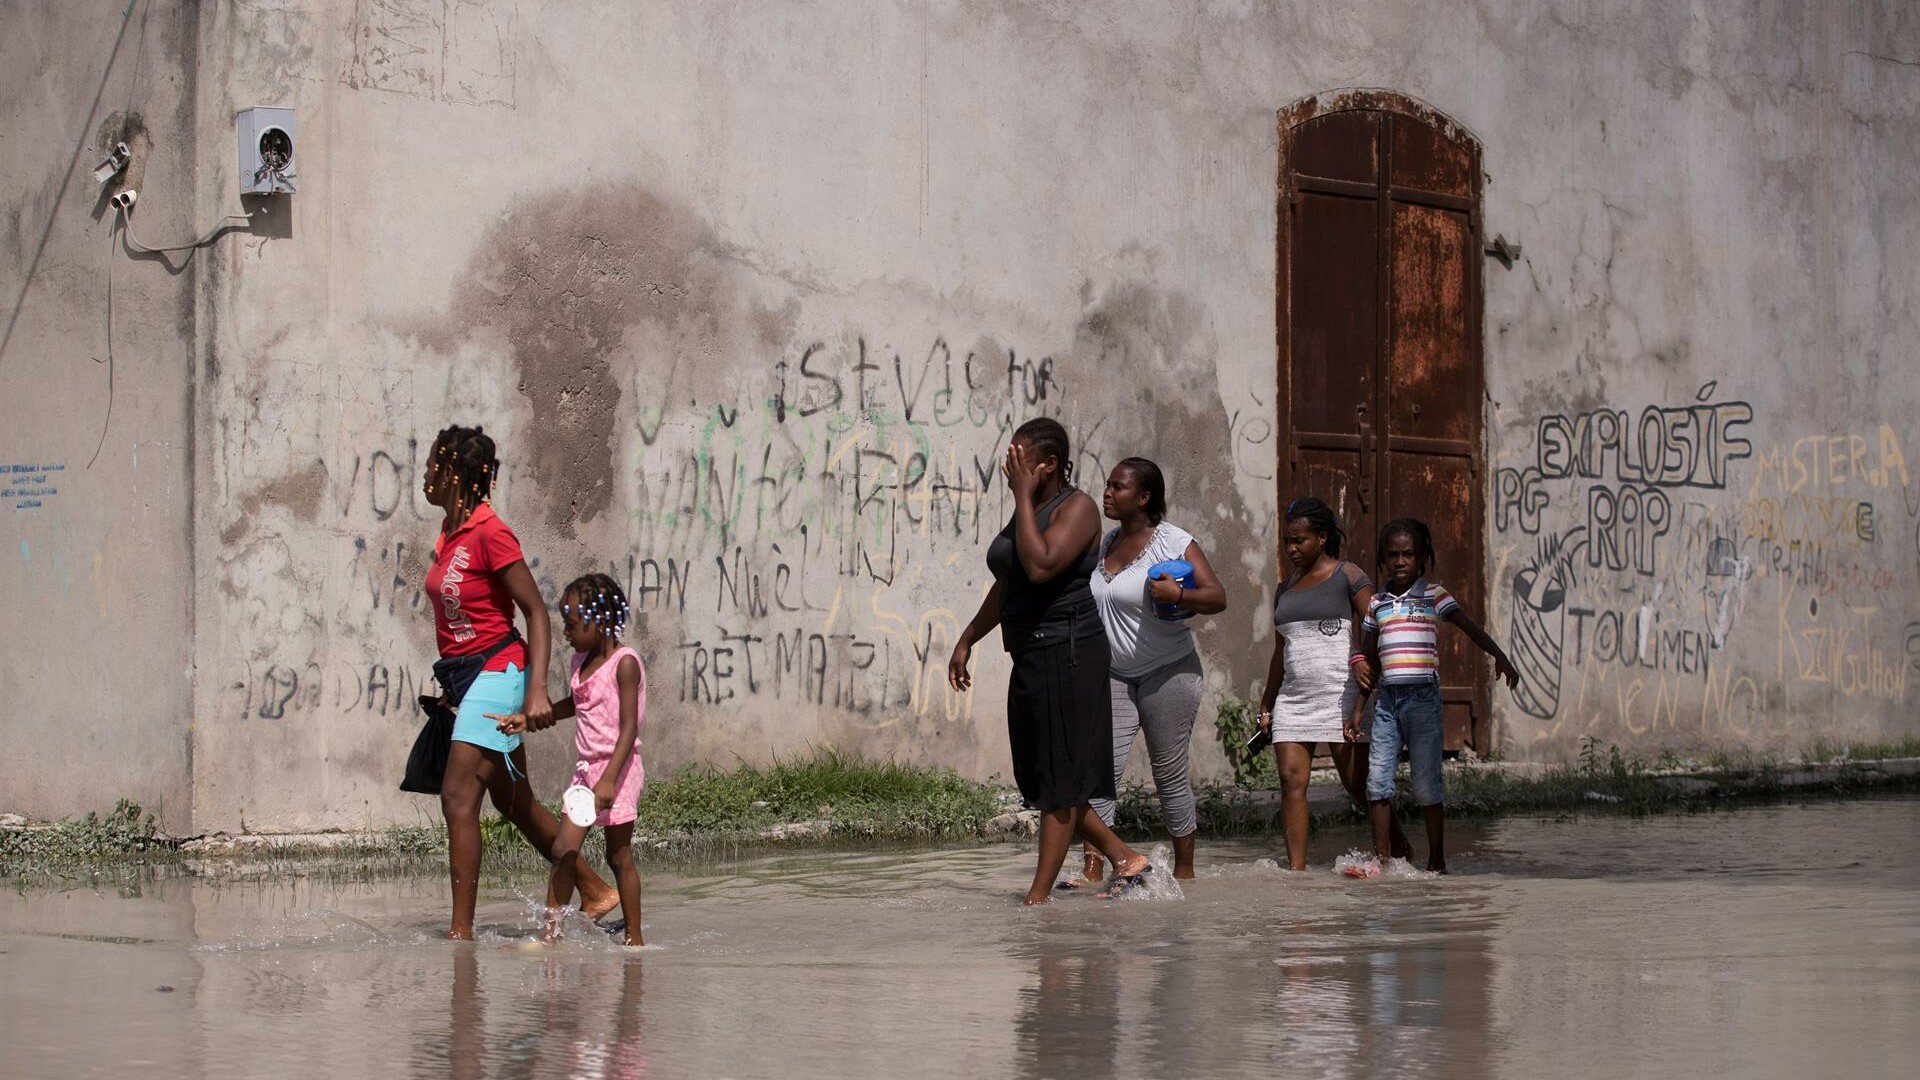 Asciende a más de 2.000 el número de muertos por el terremoto en Haití